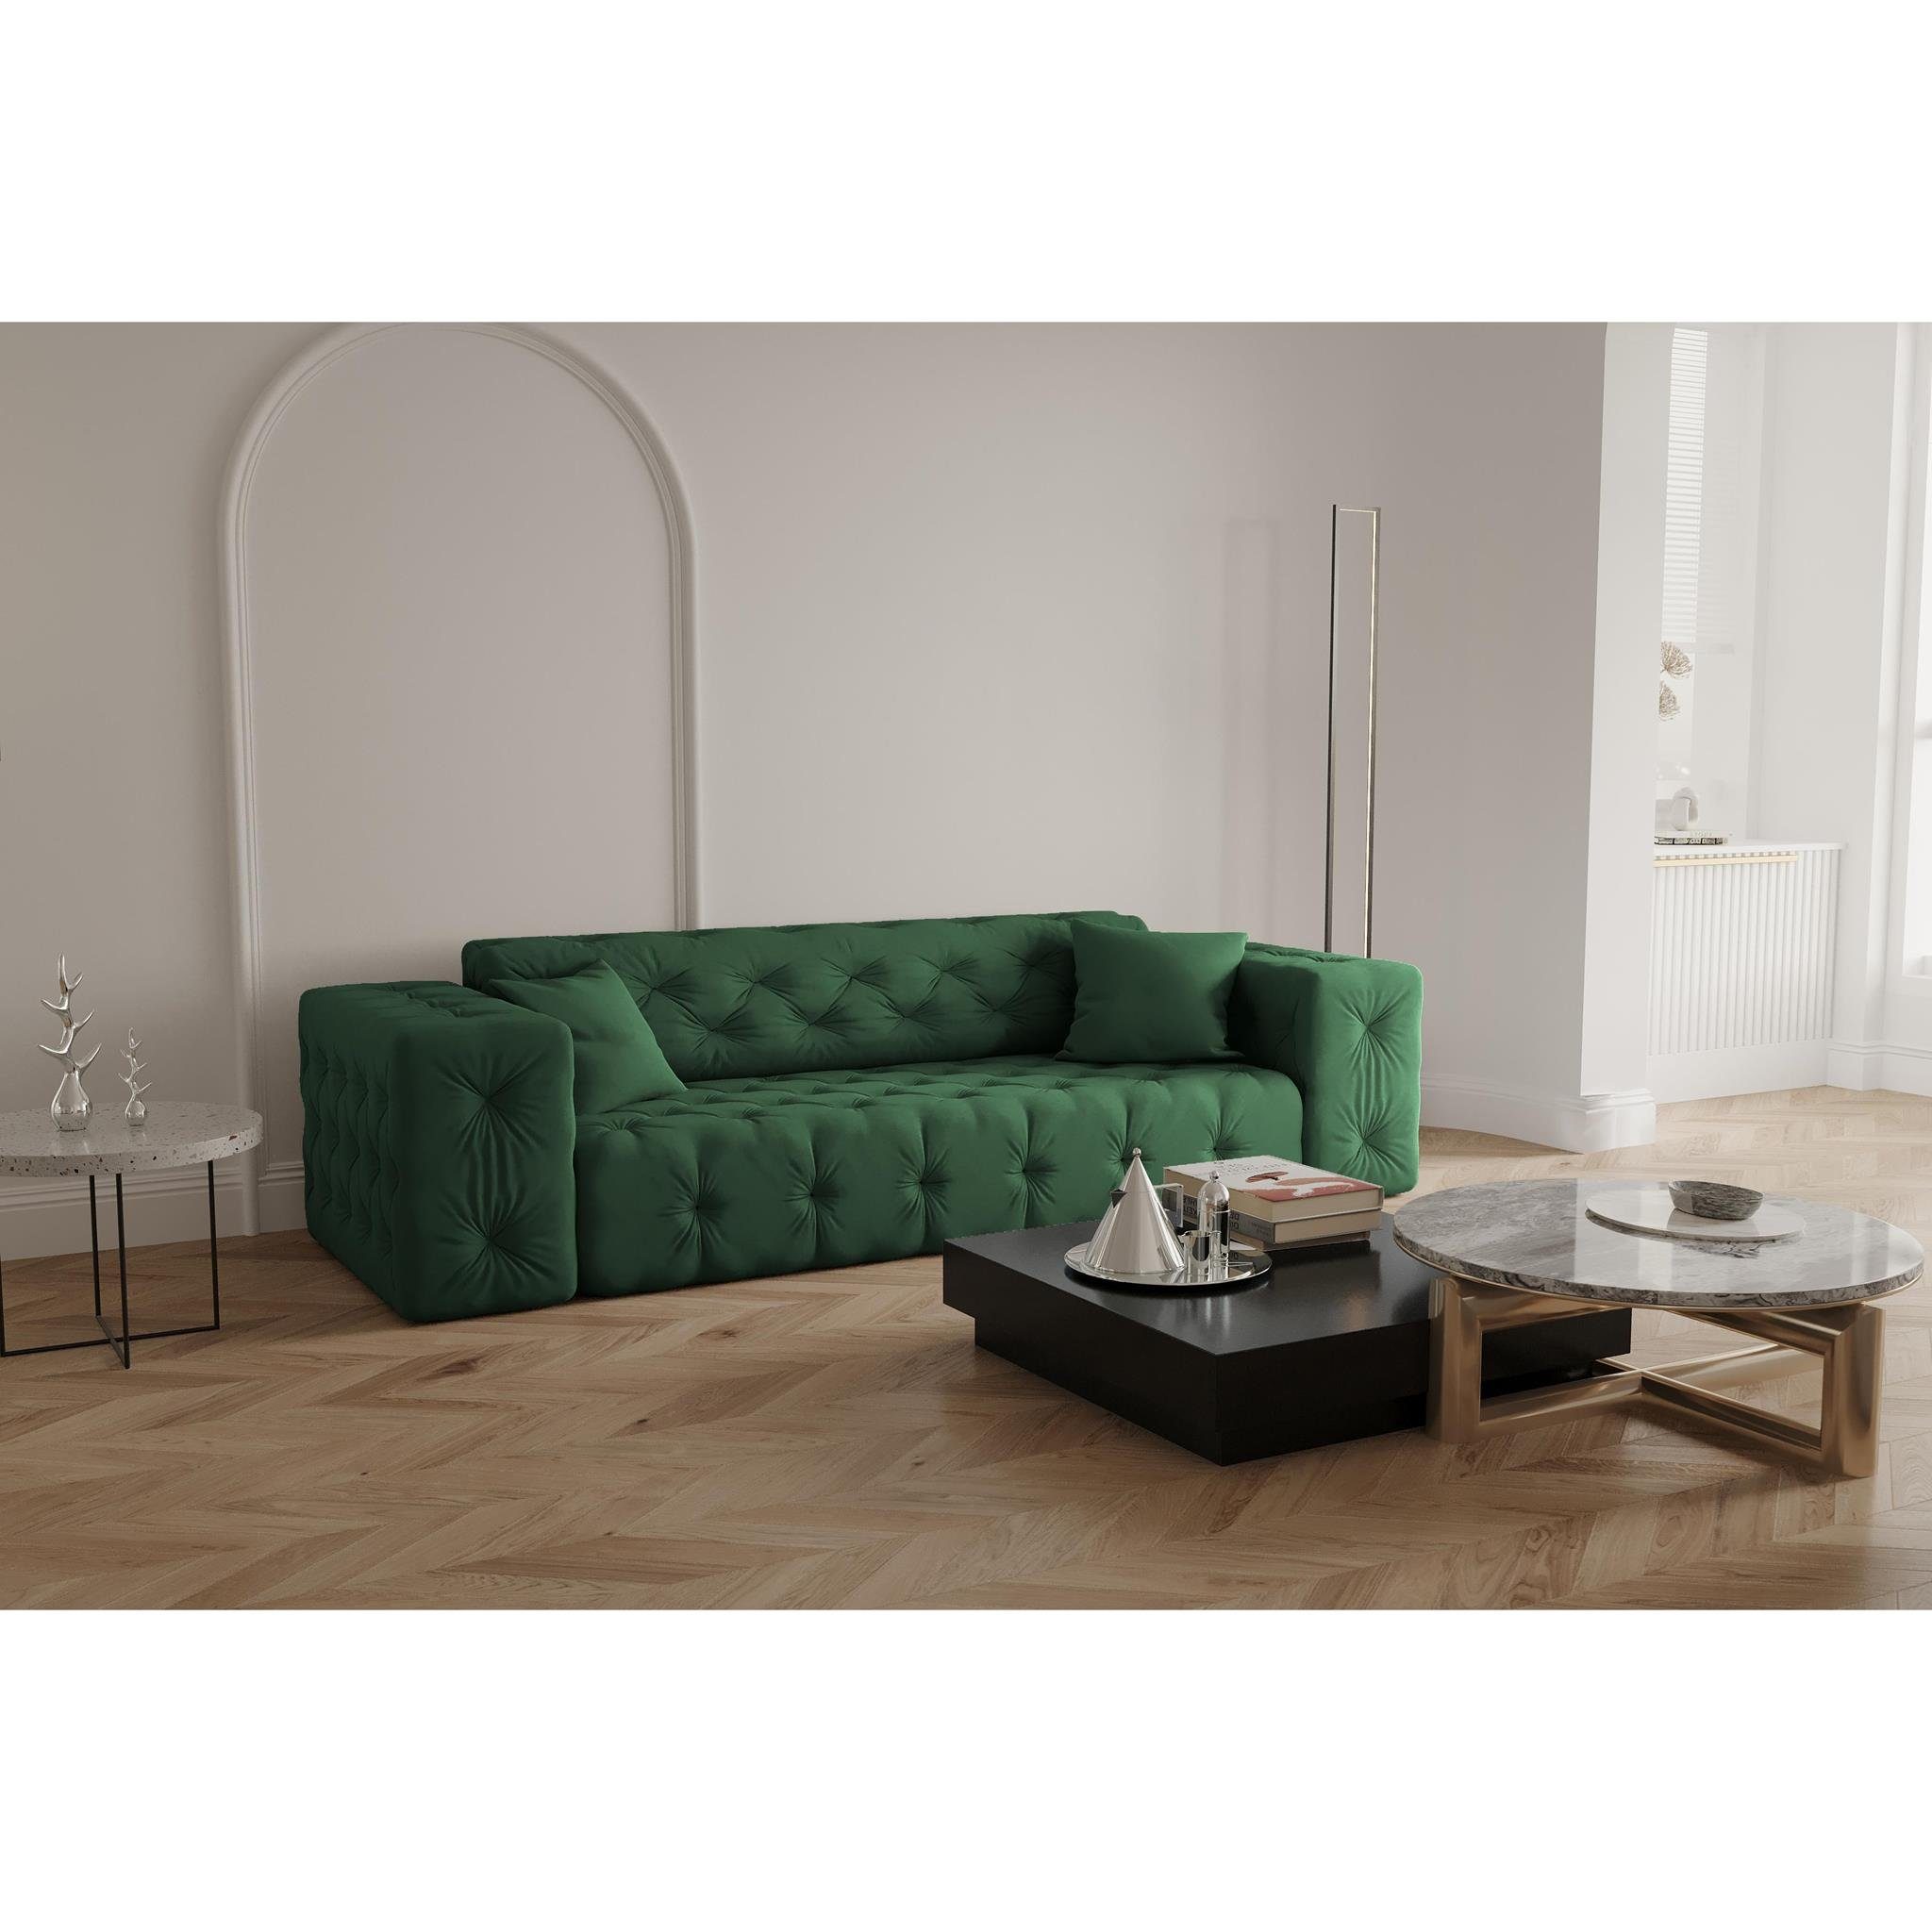 Beautysofa 3-Sitzer Moreno, 3-Sitzer Sofa aus Velvetstoff, im Chesterfield-Design, hochwertiger Knopfheftung Opera green